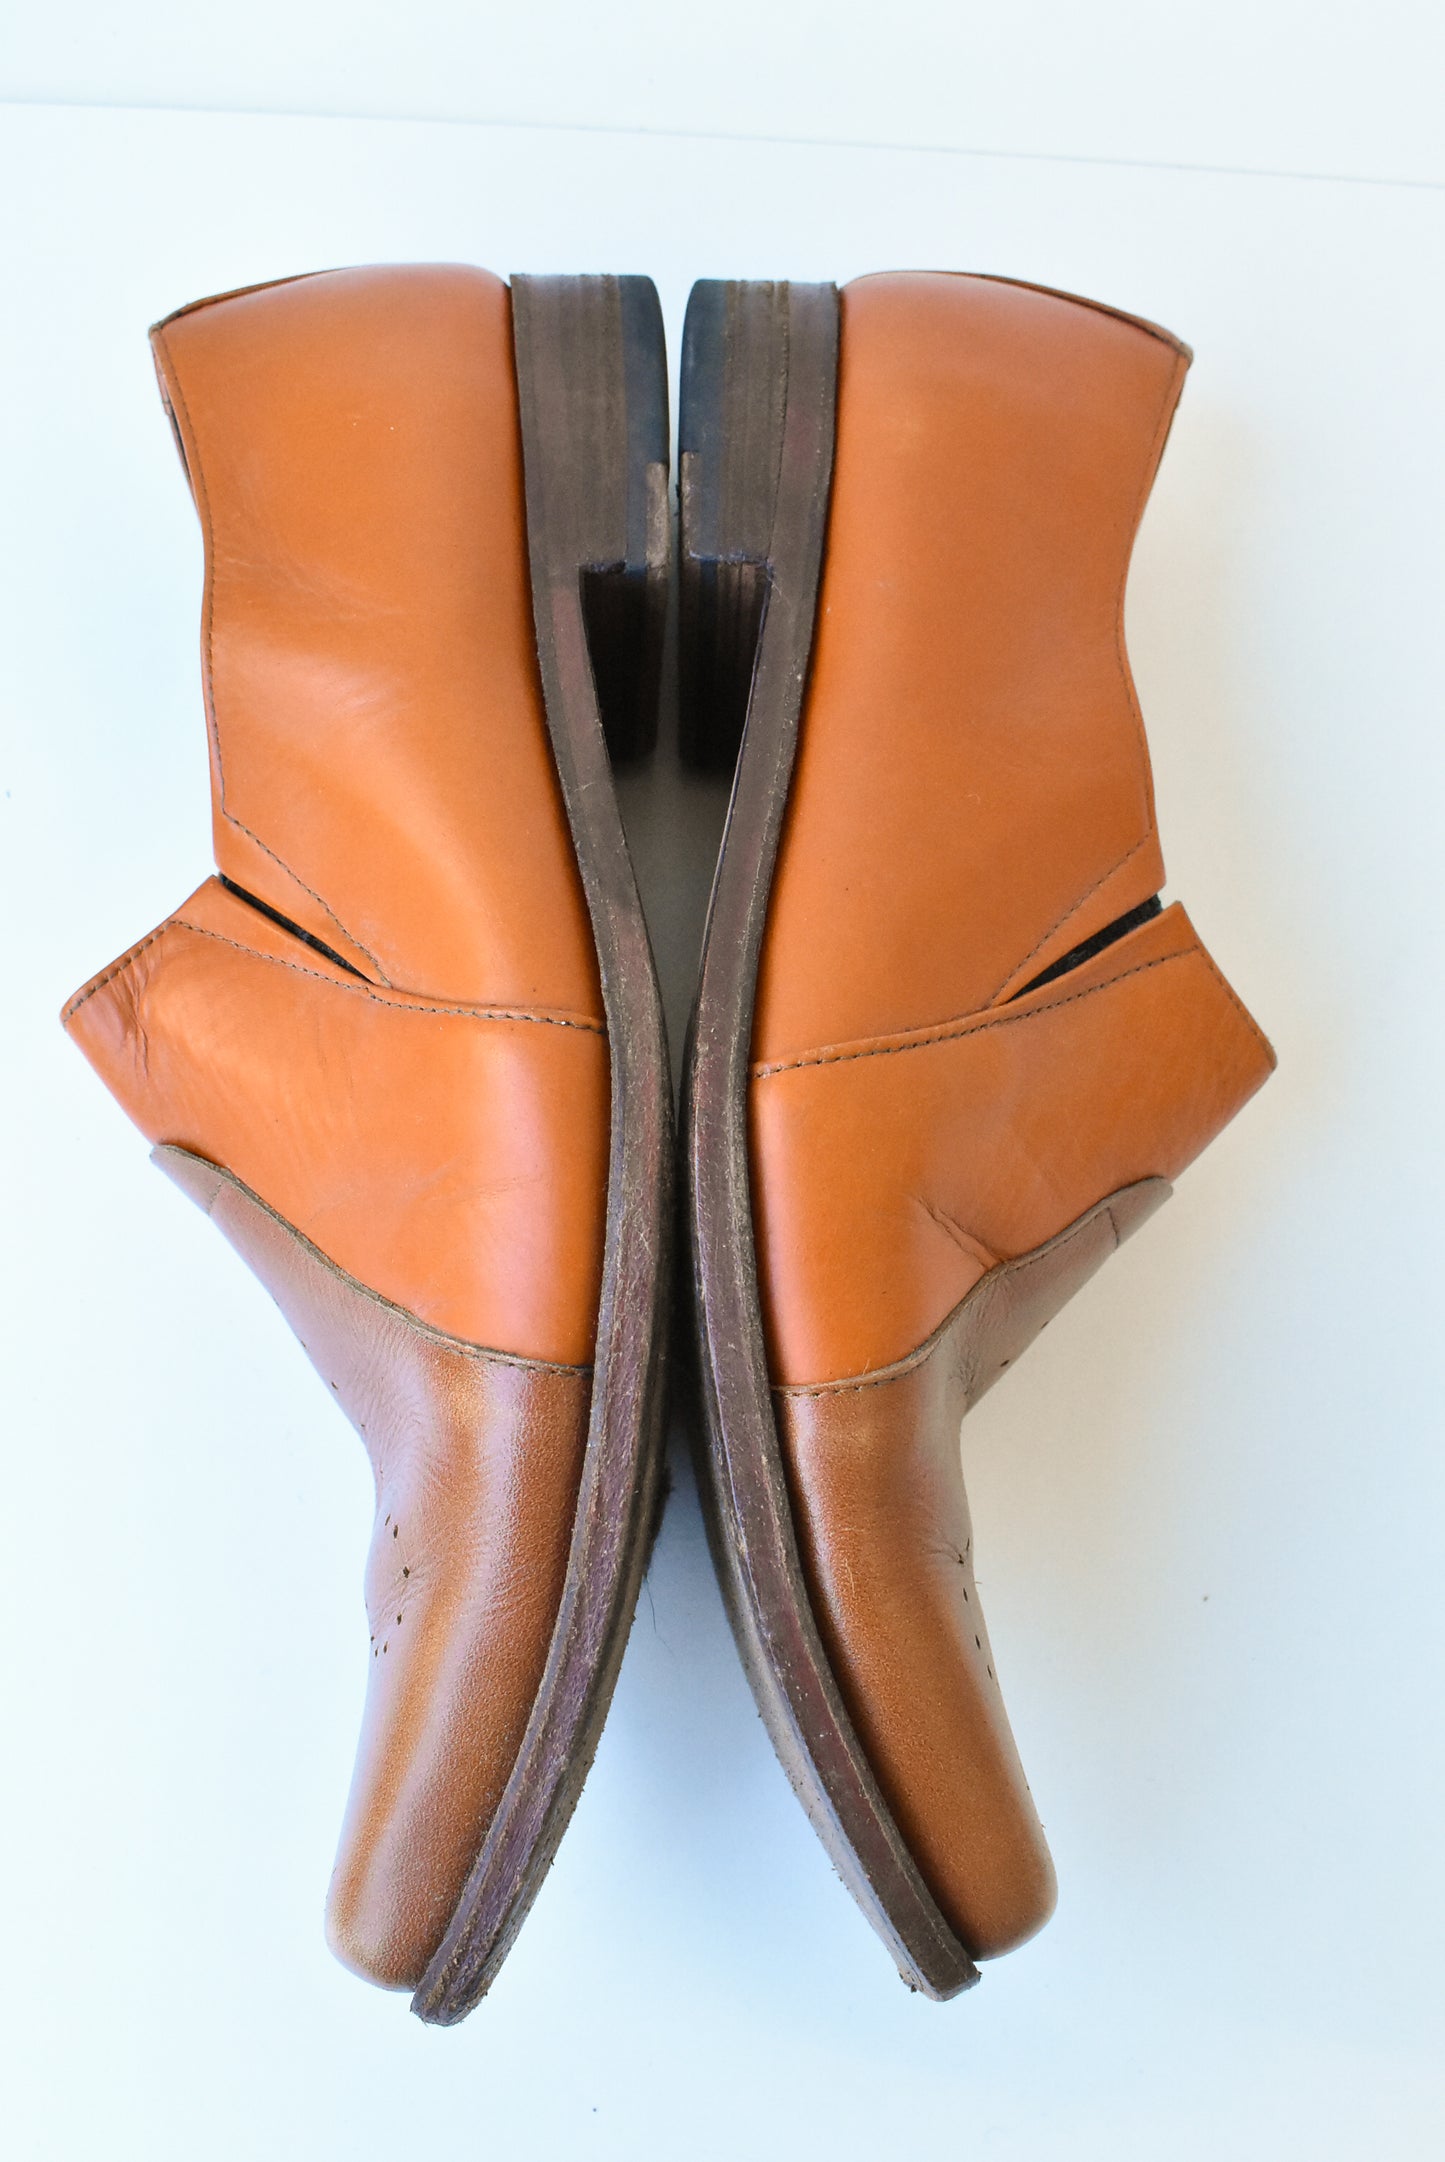 YALY tan leather dress shoes, eu46